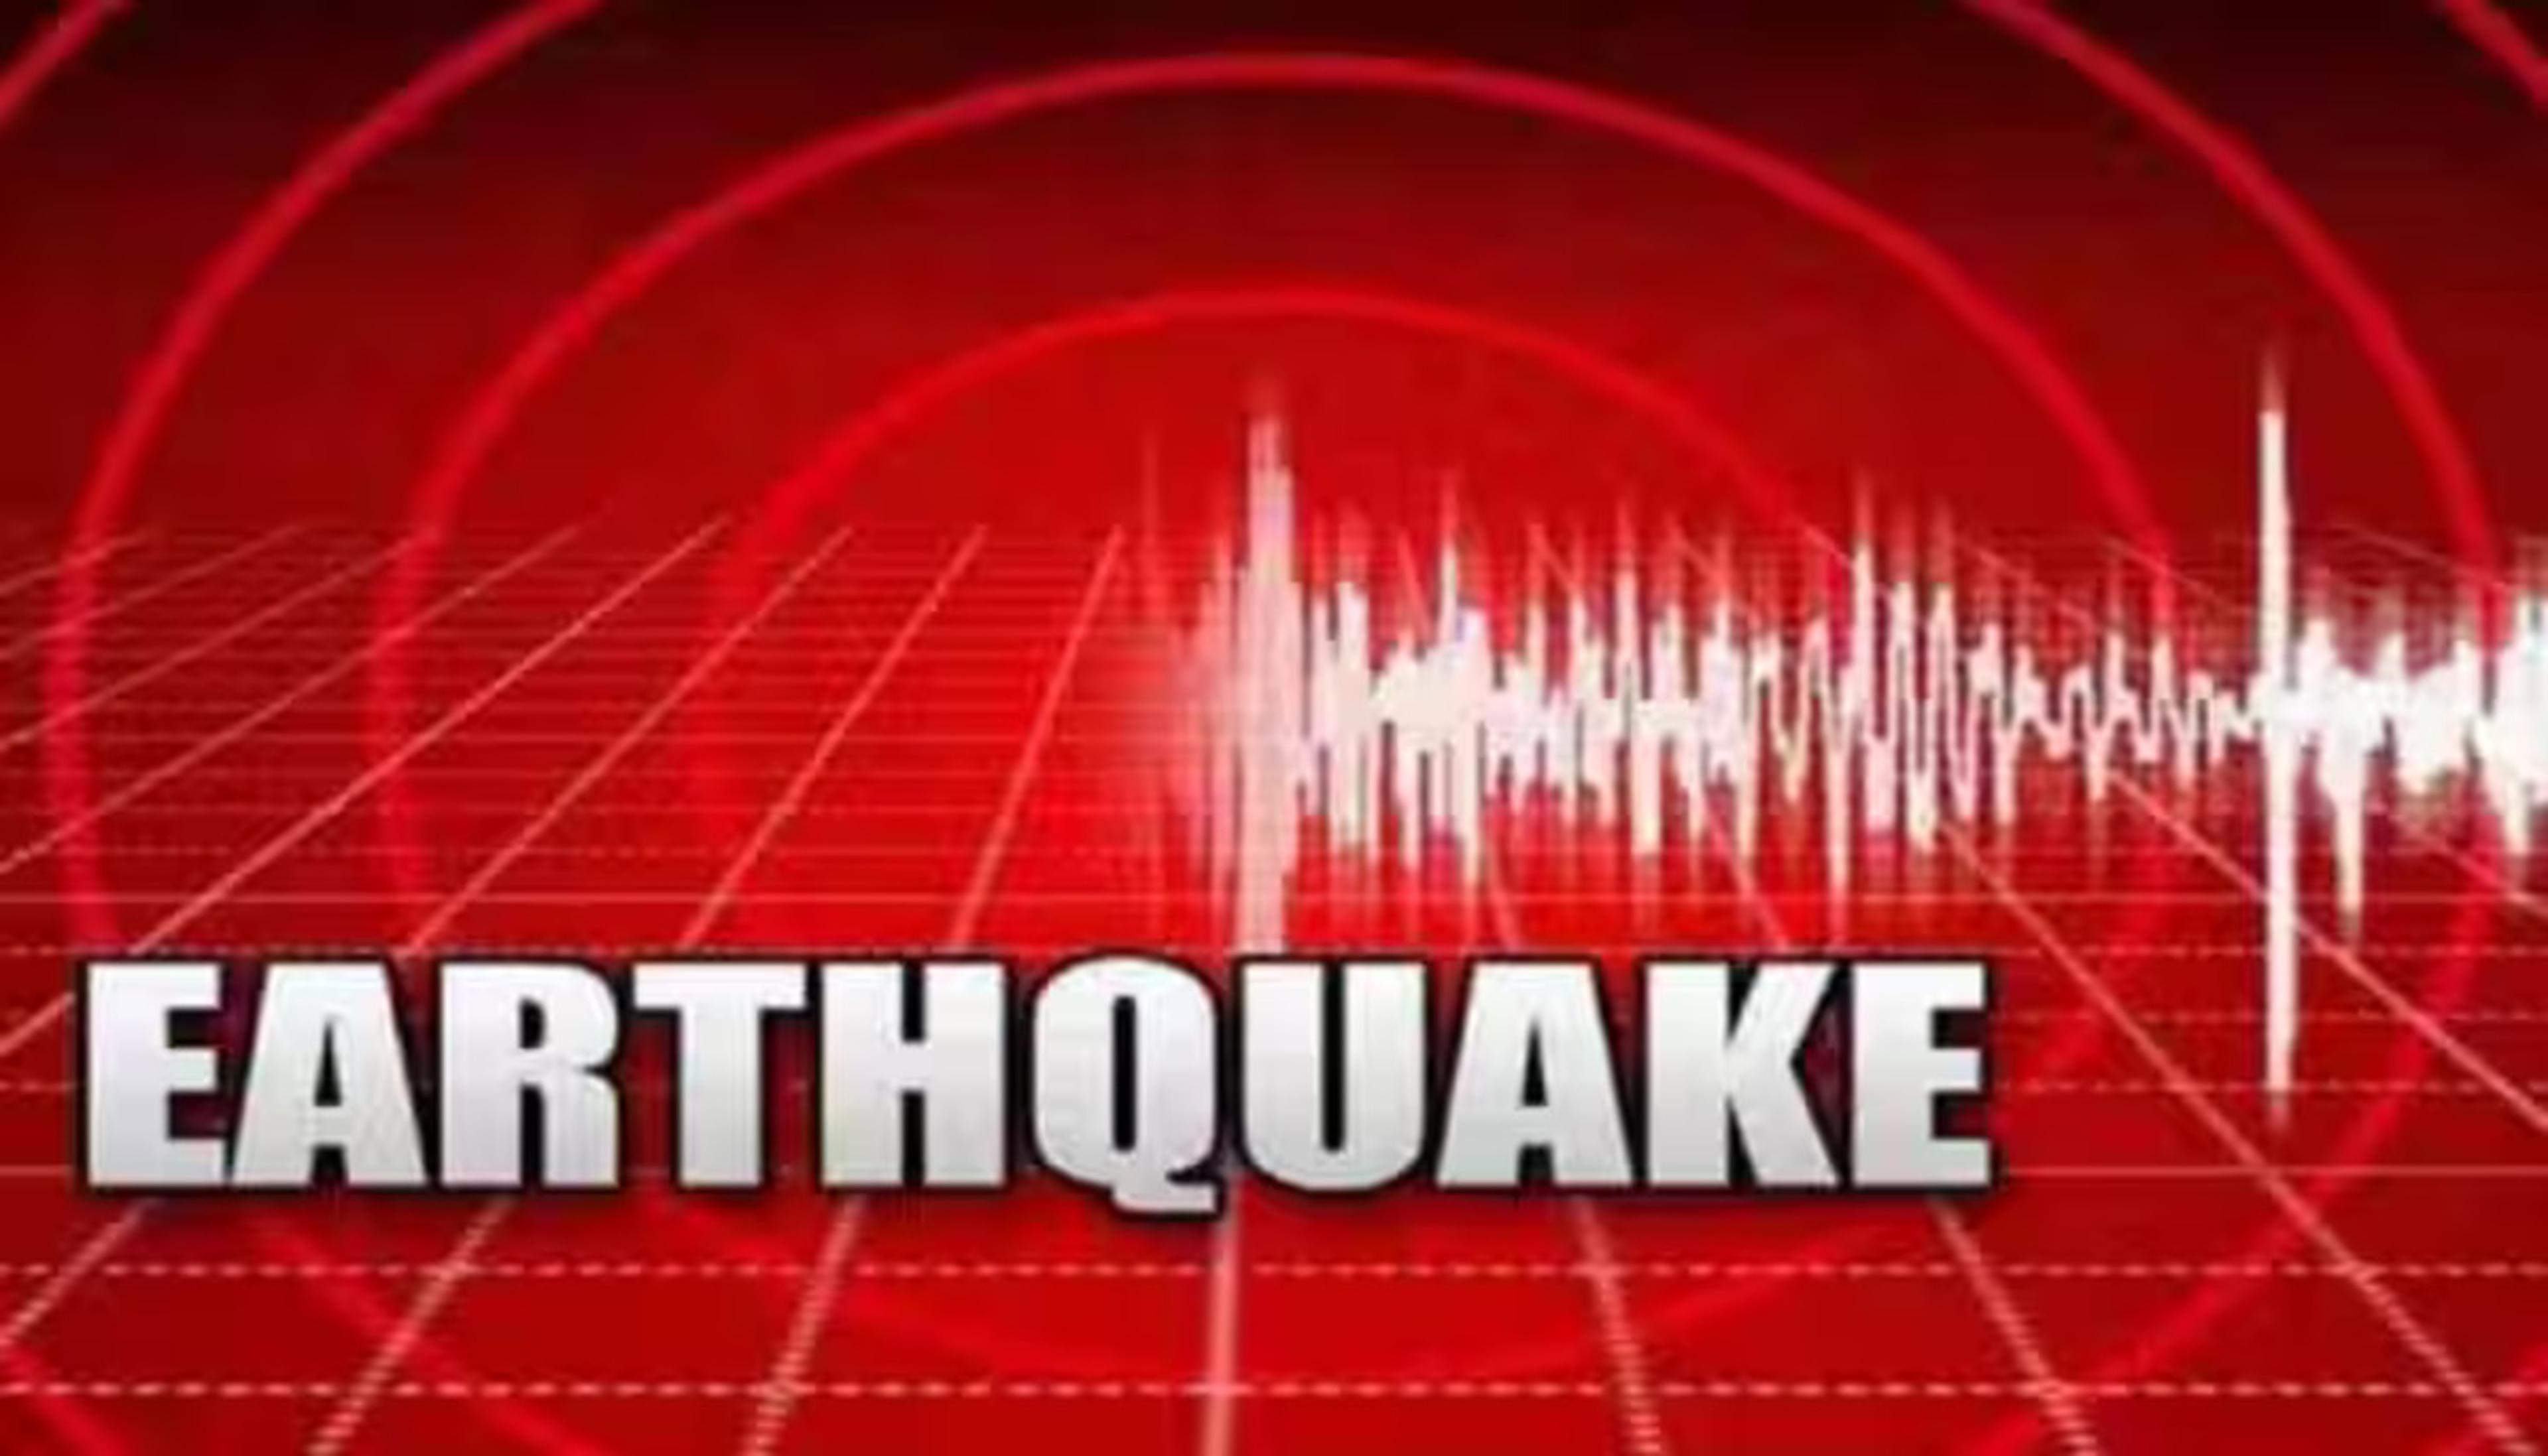 Earthquake: साउथर्न मिड अटलांटिक रिज पर भूकंप, रिक्टर स्केल पर रही 4.9 की
तीव्रता